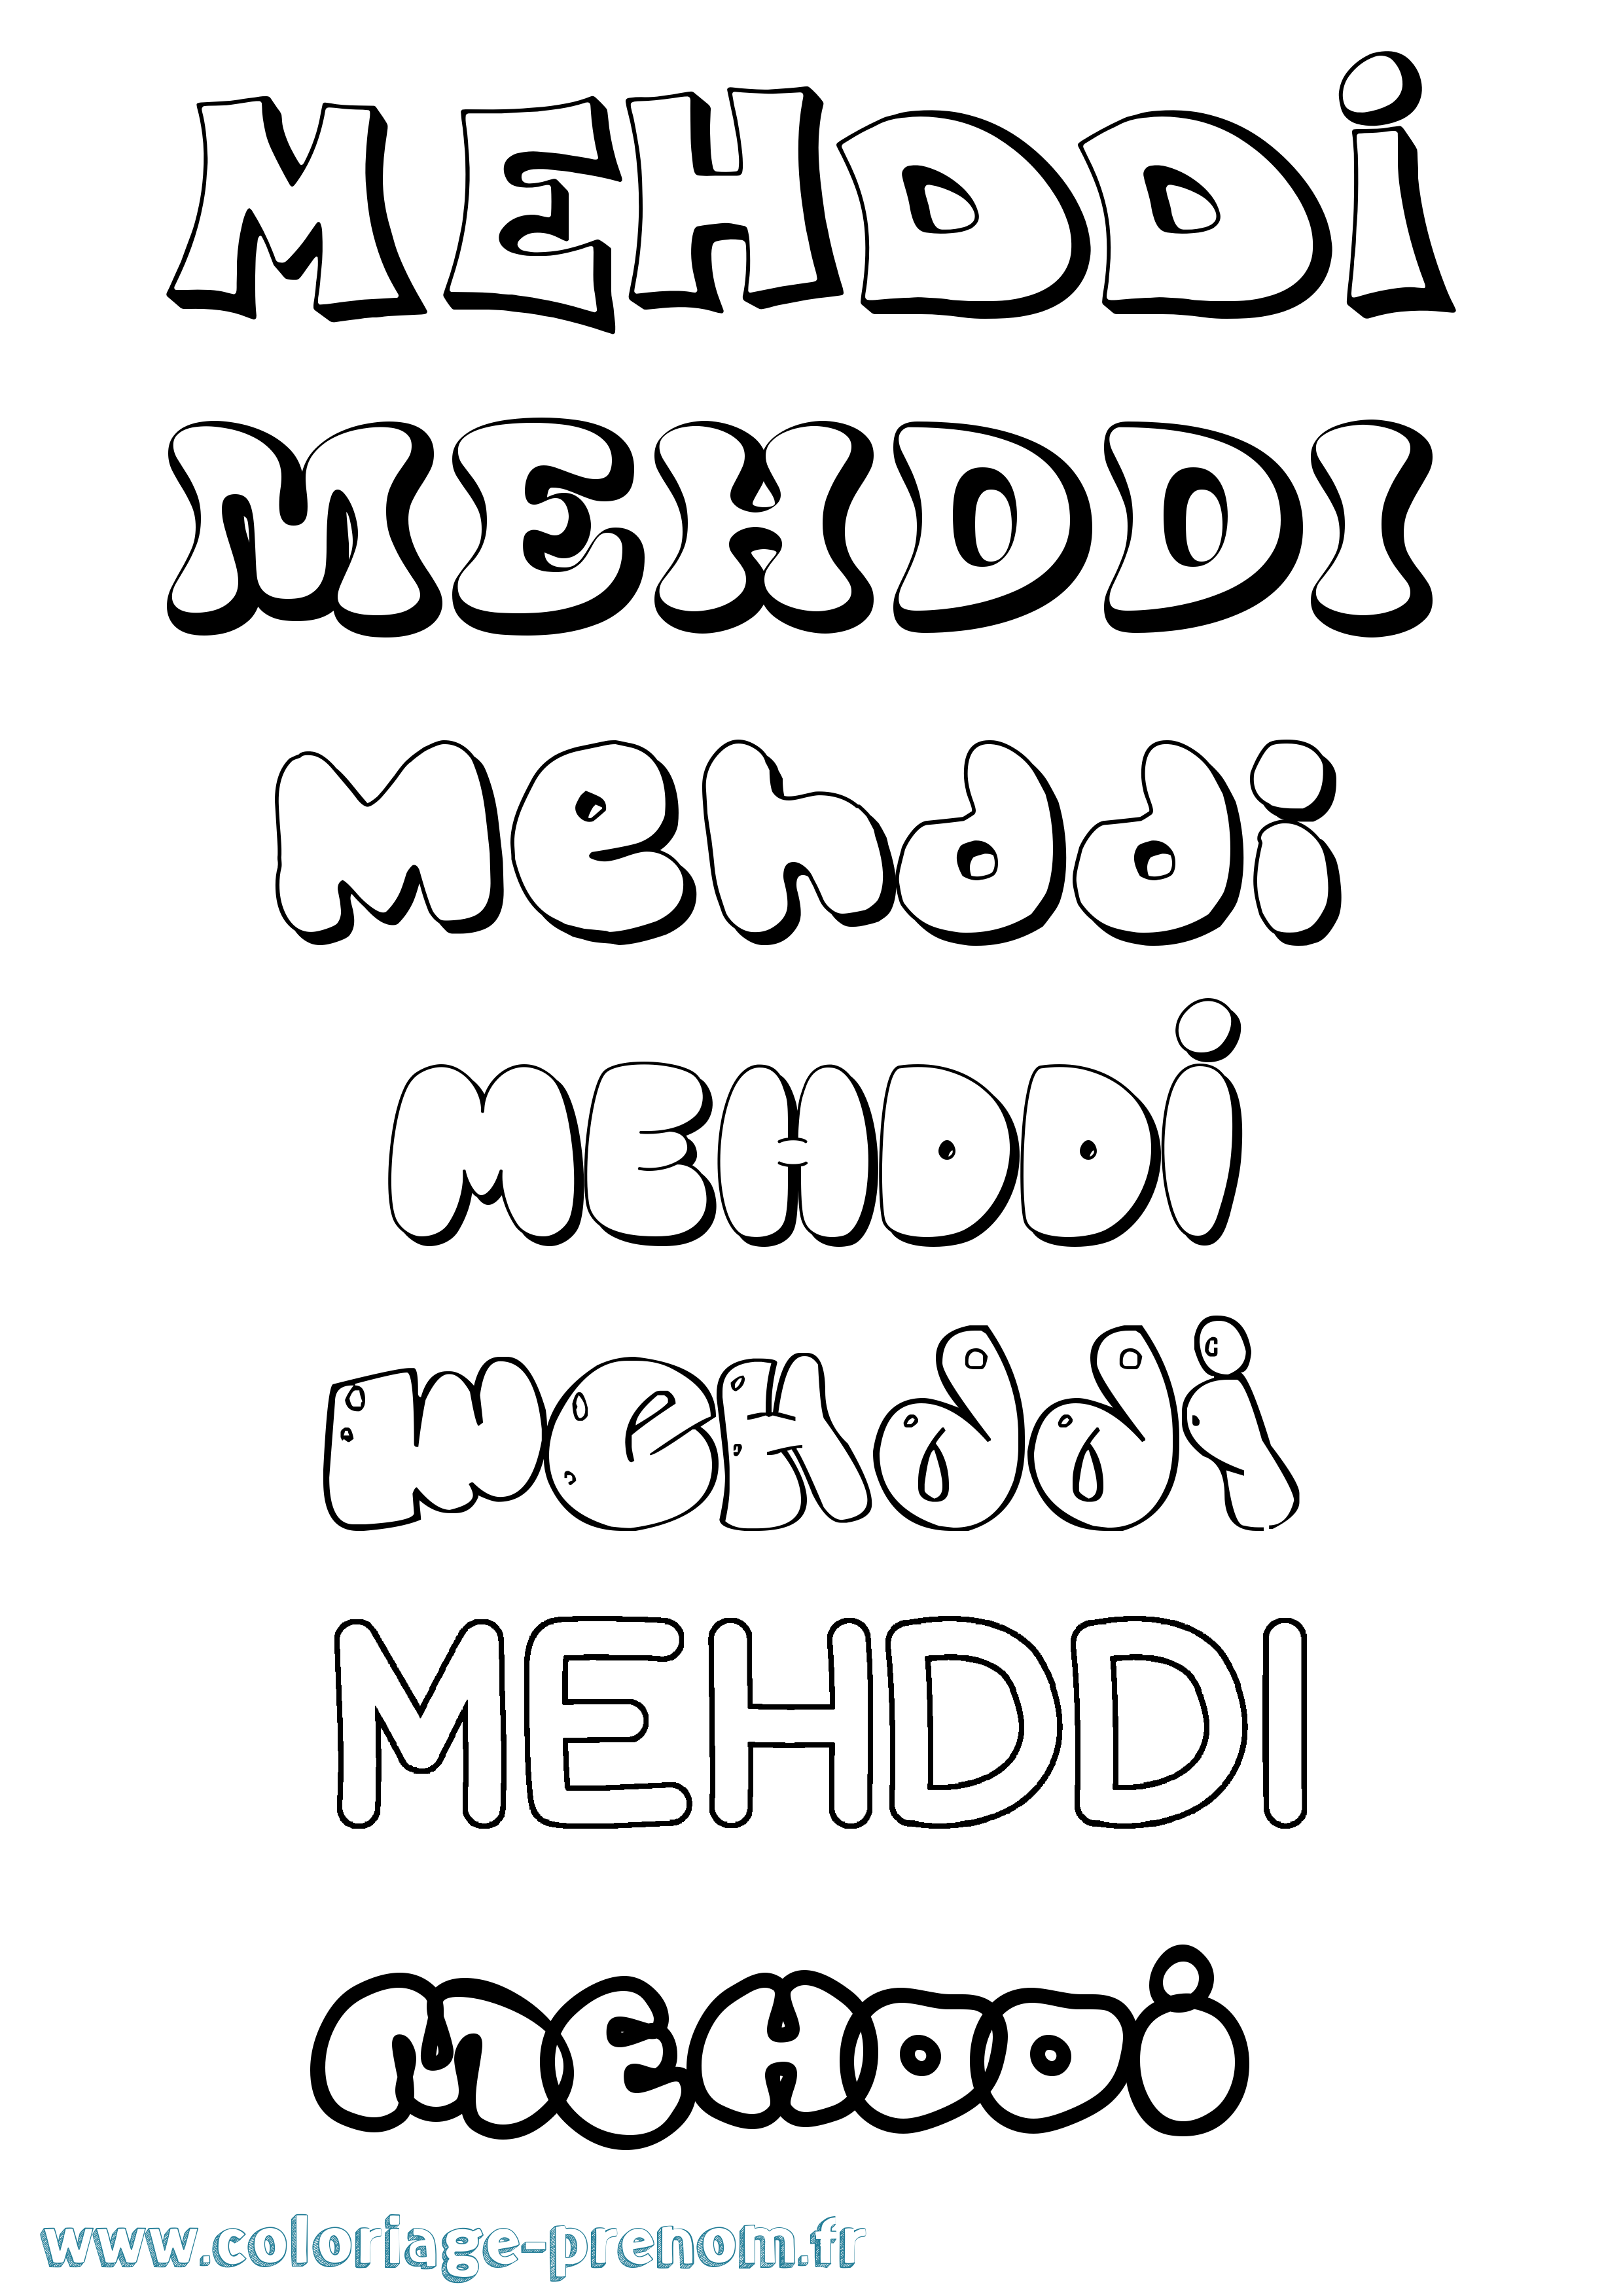 Coloriage prénom Mehddi Bubble